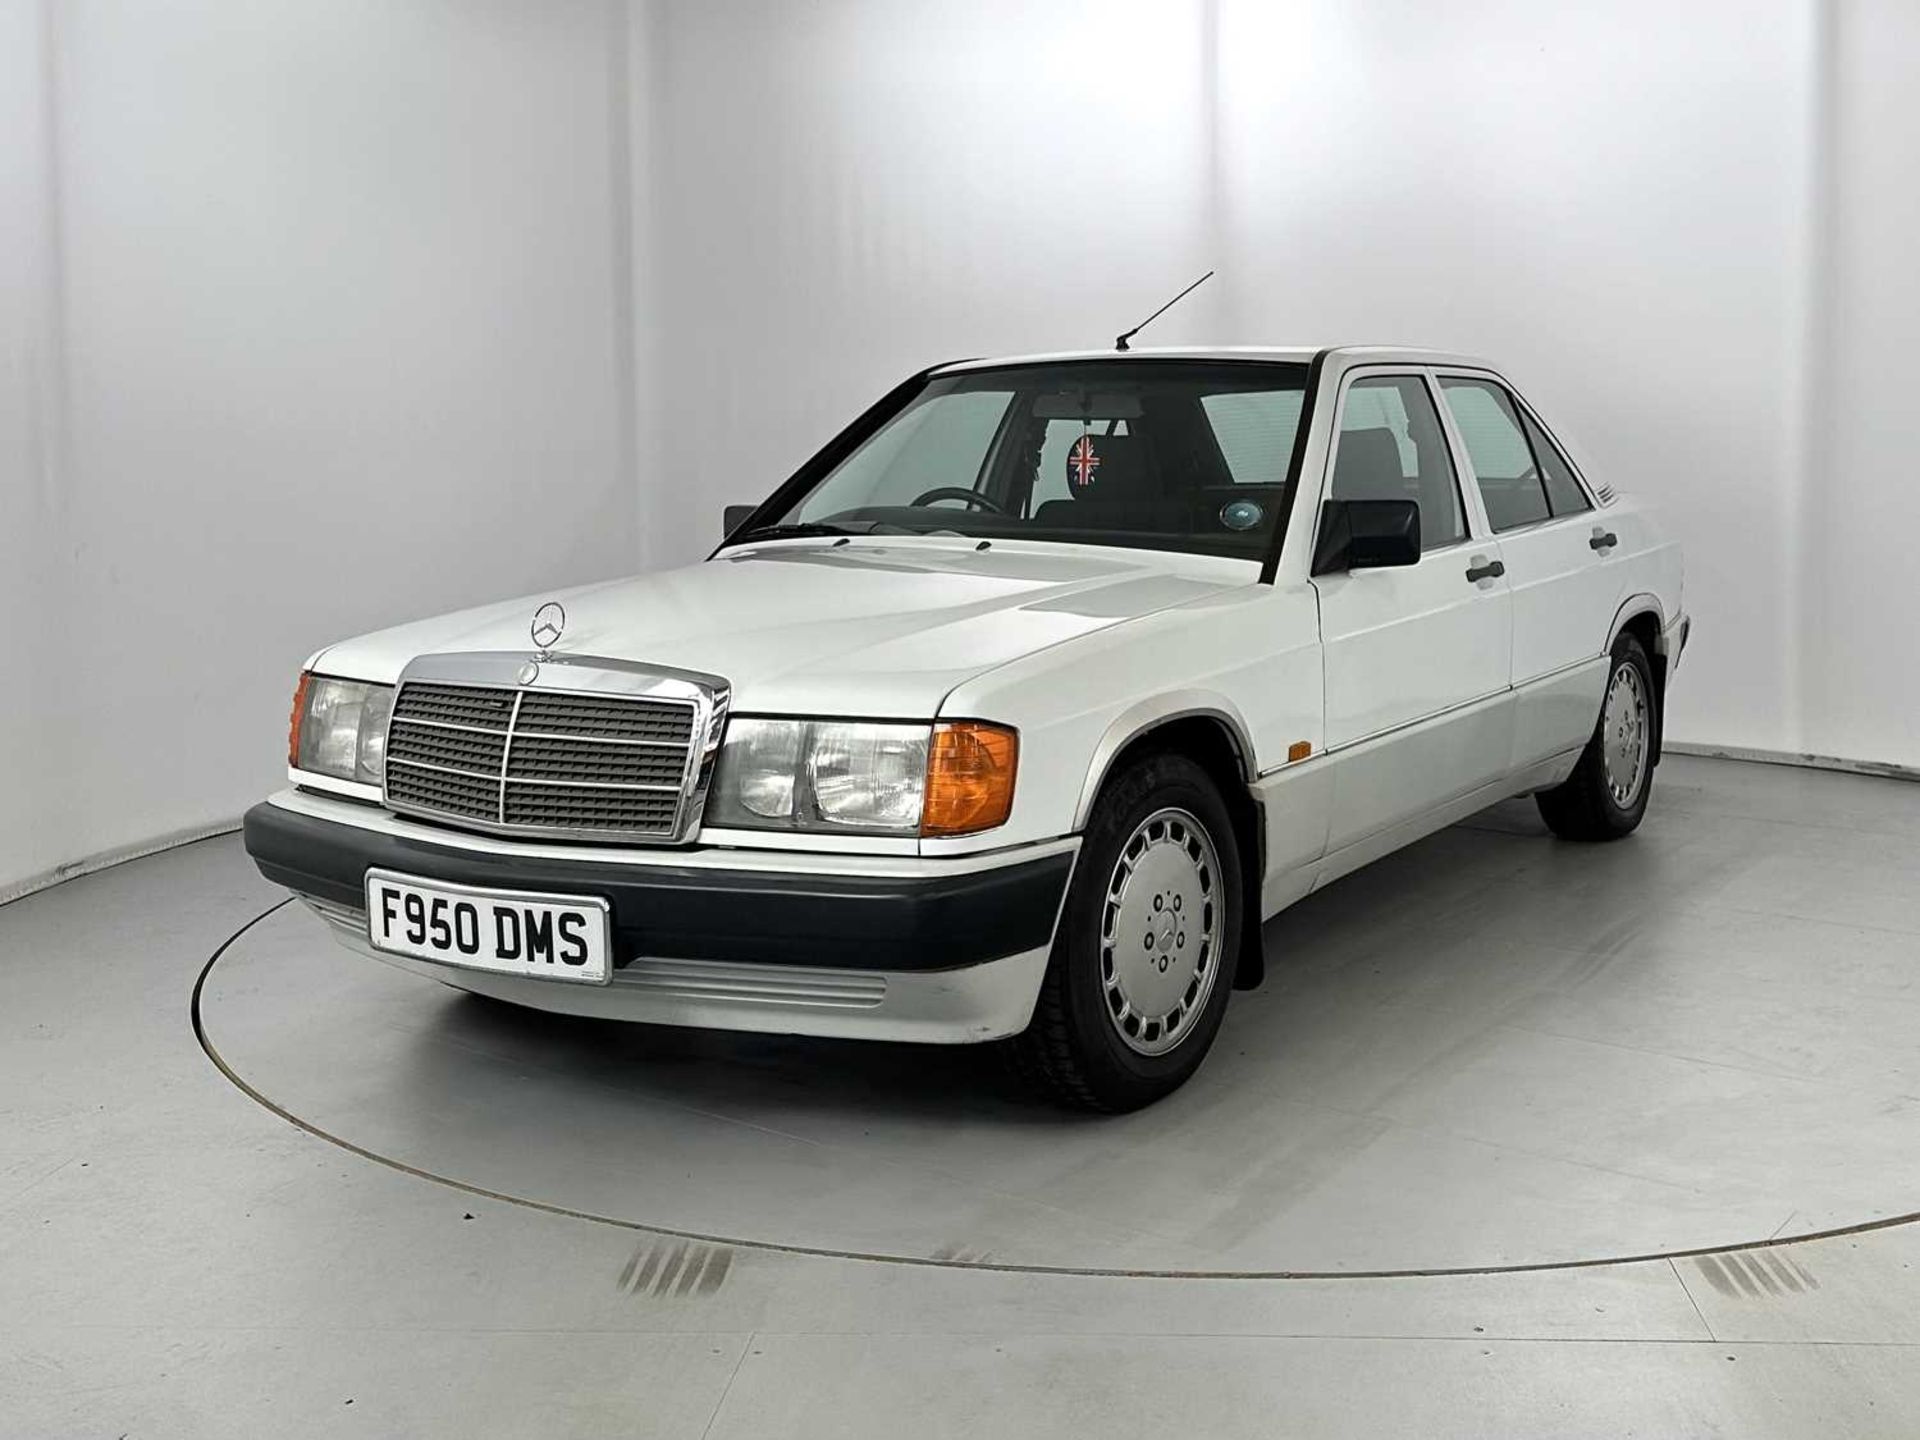 1989 Mercedes-Benz 190E - Image 3 of 34